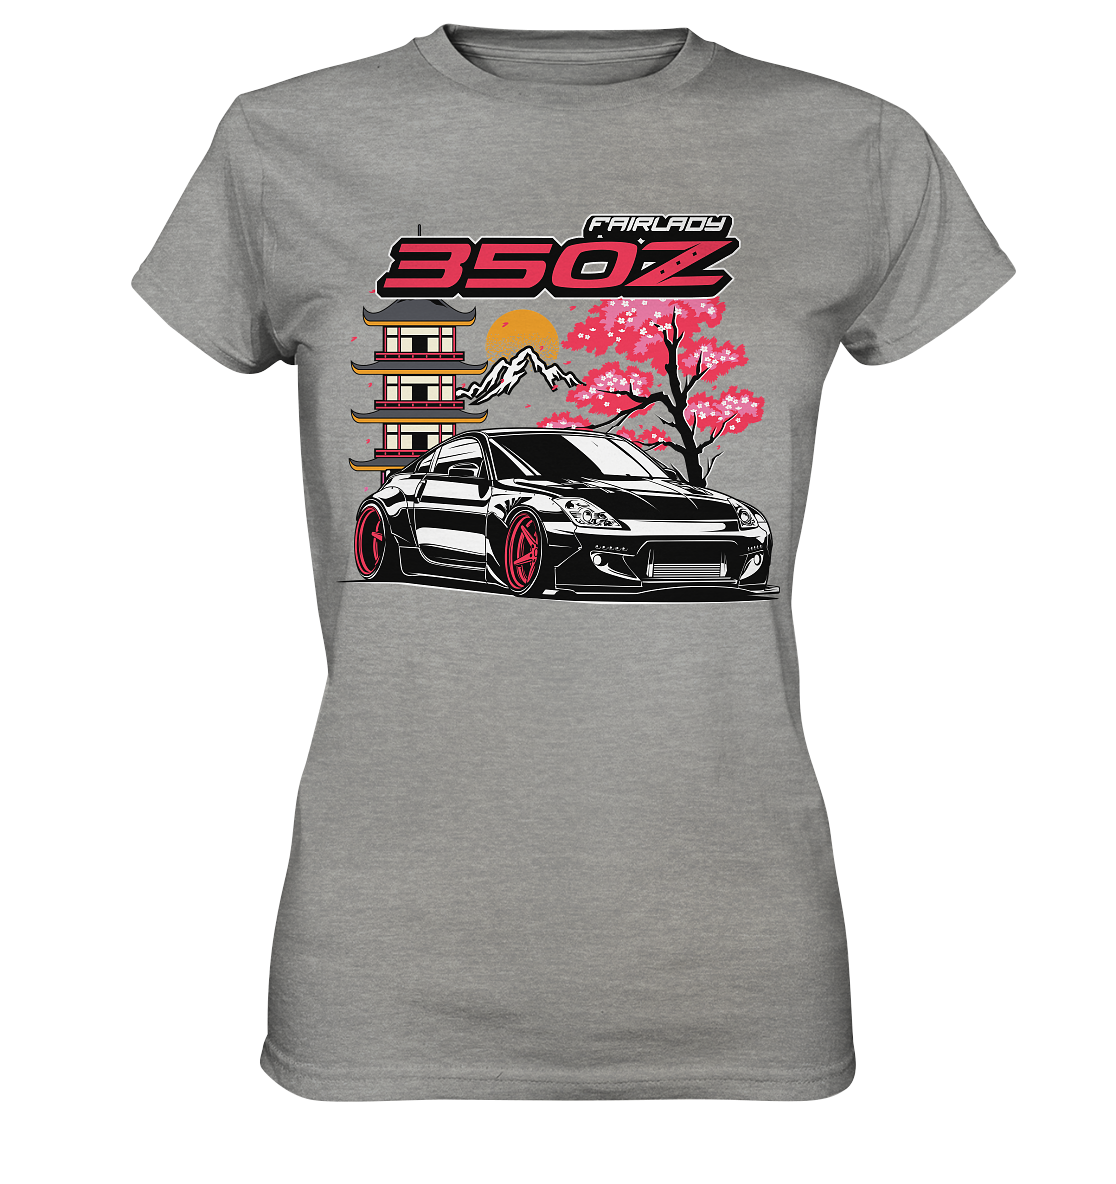 350Z Fairlady - Ladies Premium Shirt